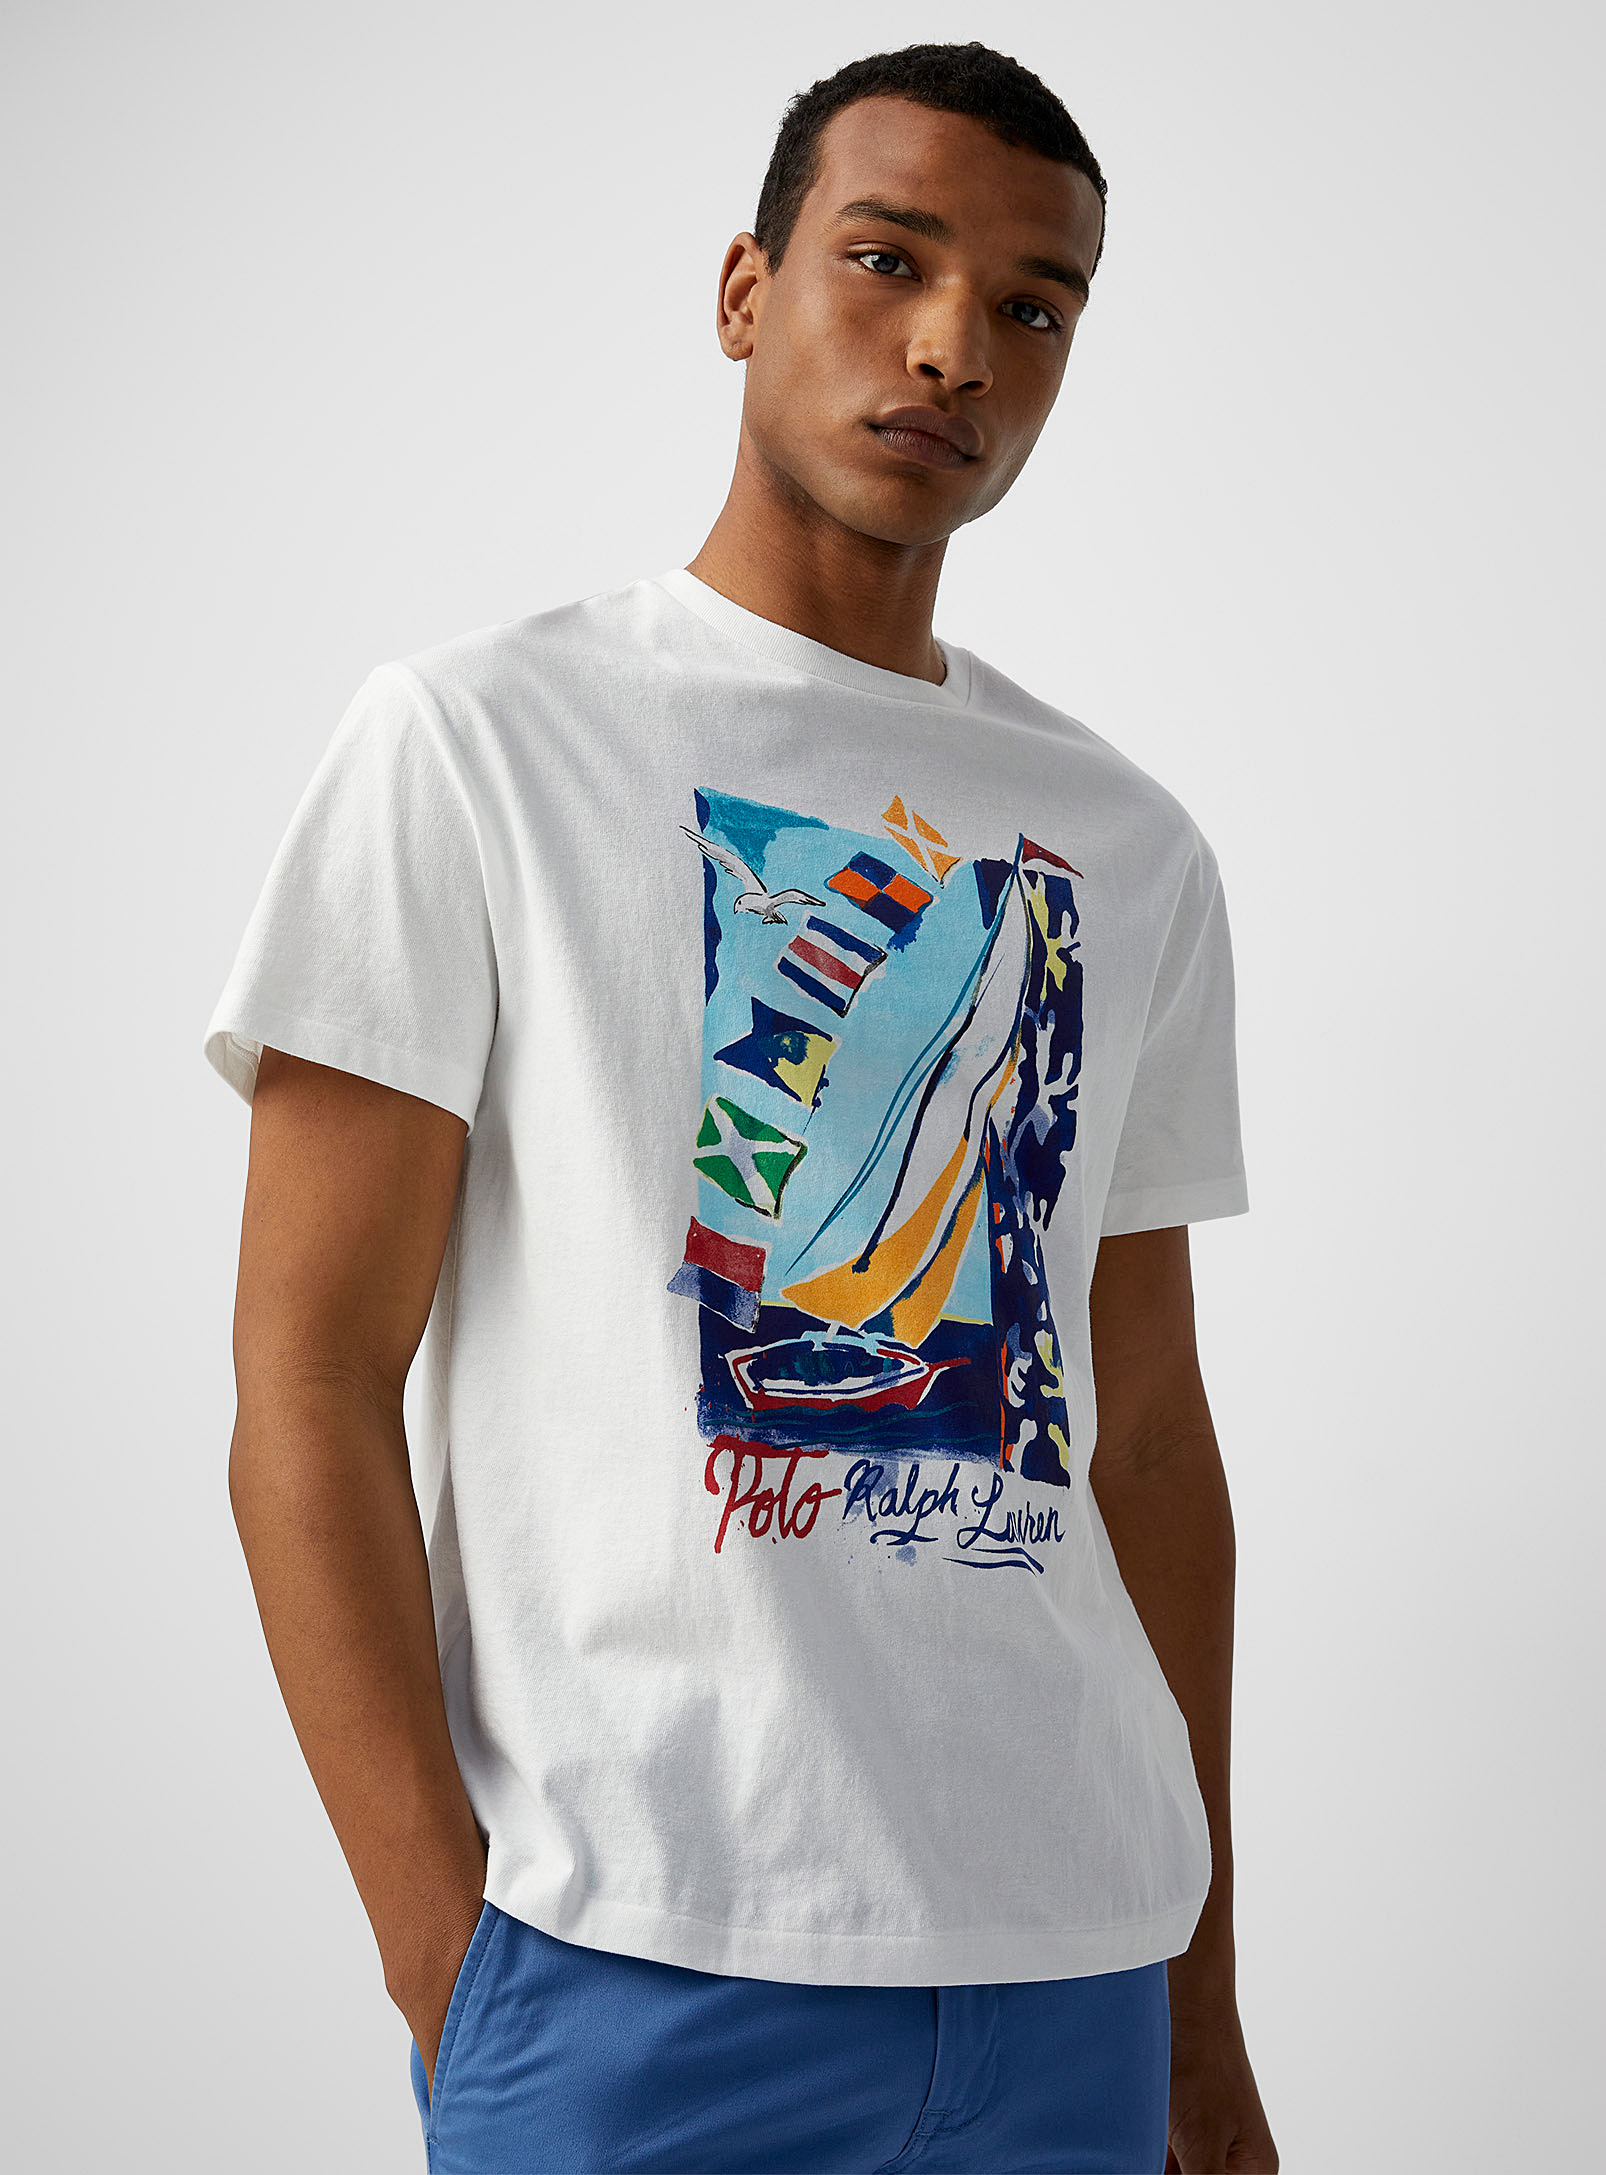 Polo Shirt Ralph Lauren - Men's Regatta T-shirt